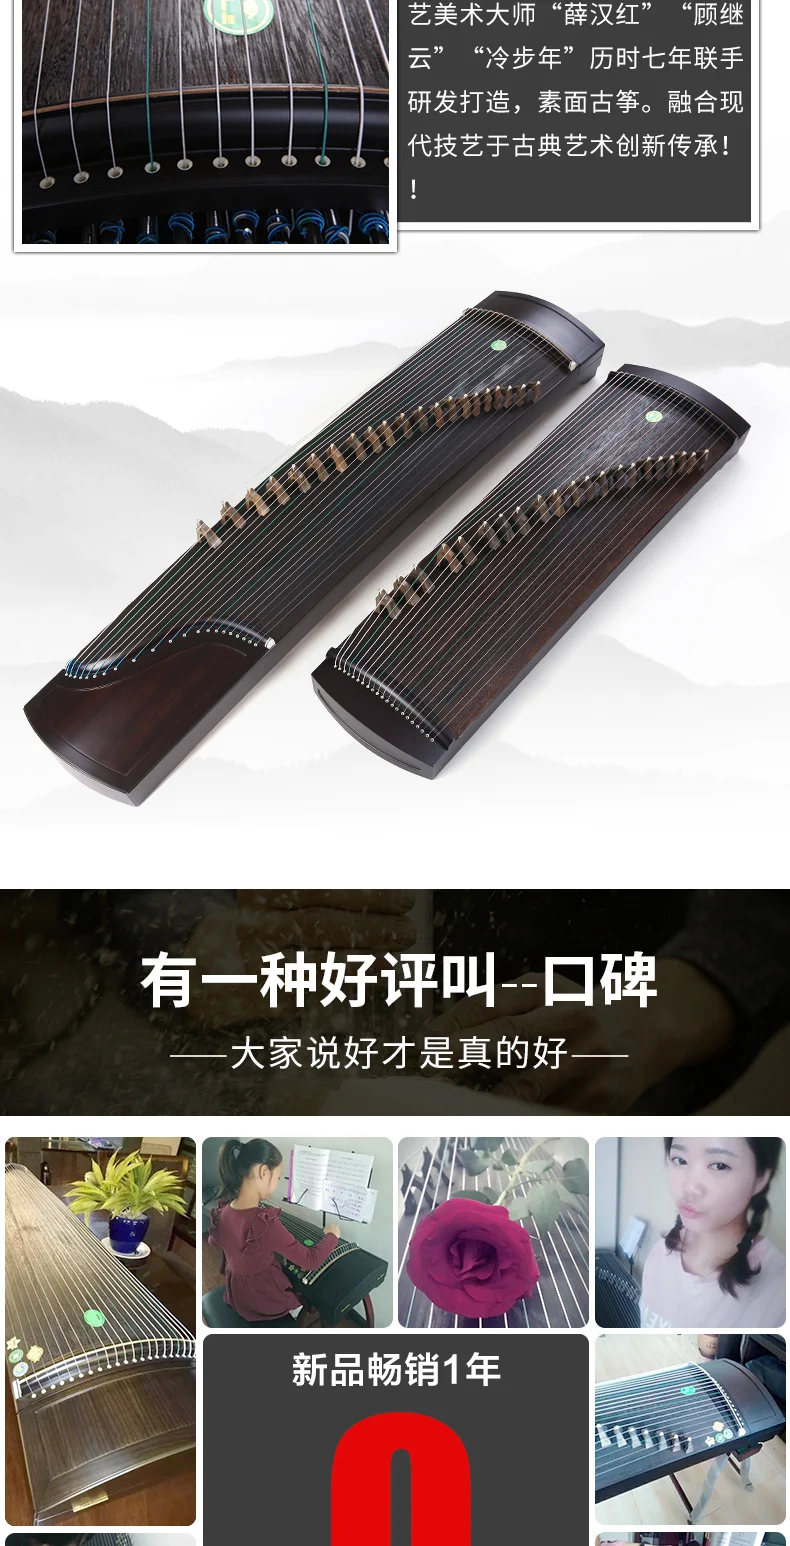 Профессиональный 21 струнный китайский zither белый сосна guzheng профессиональные копающиеся вставки solidwood u zheng zither